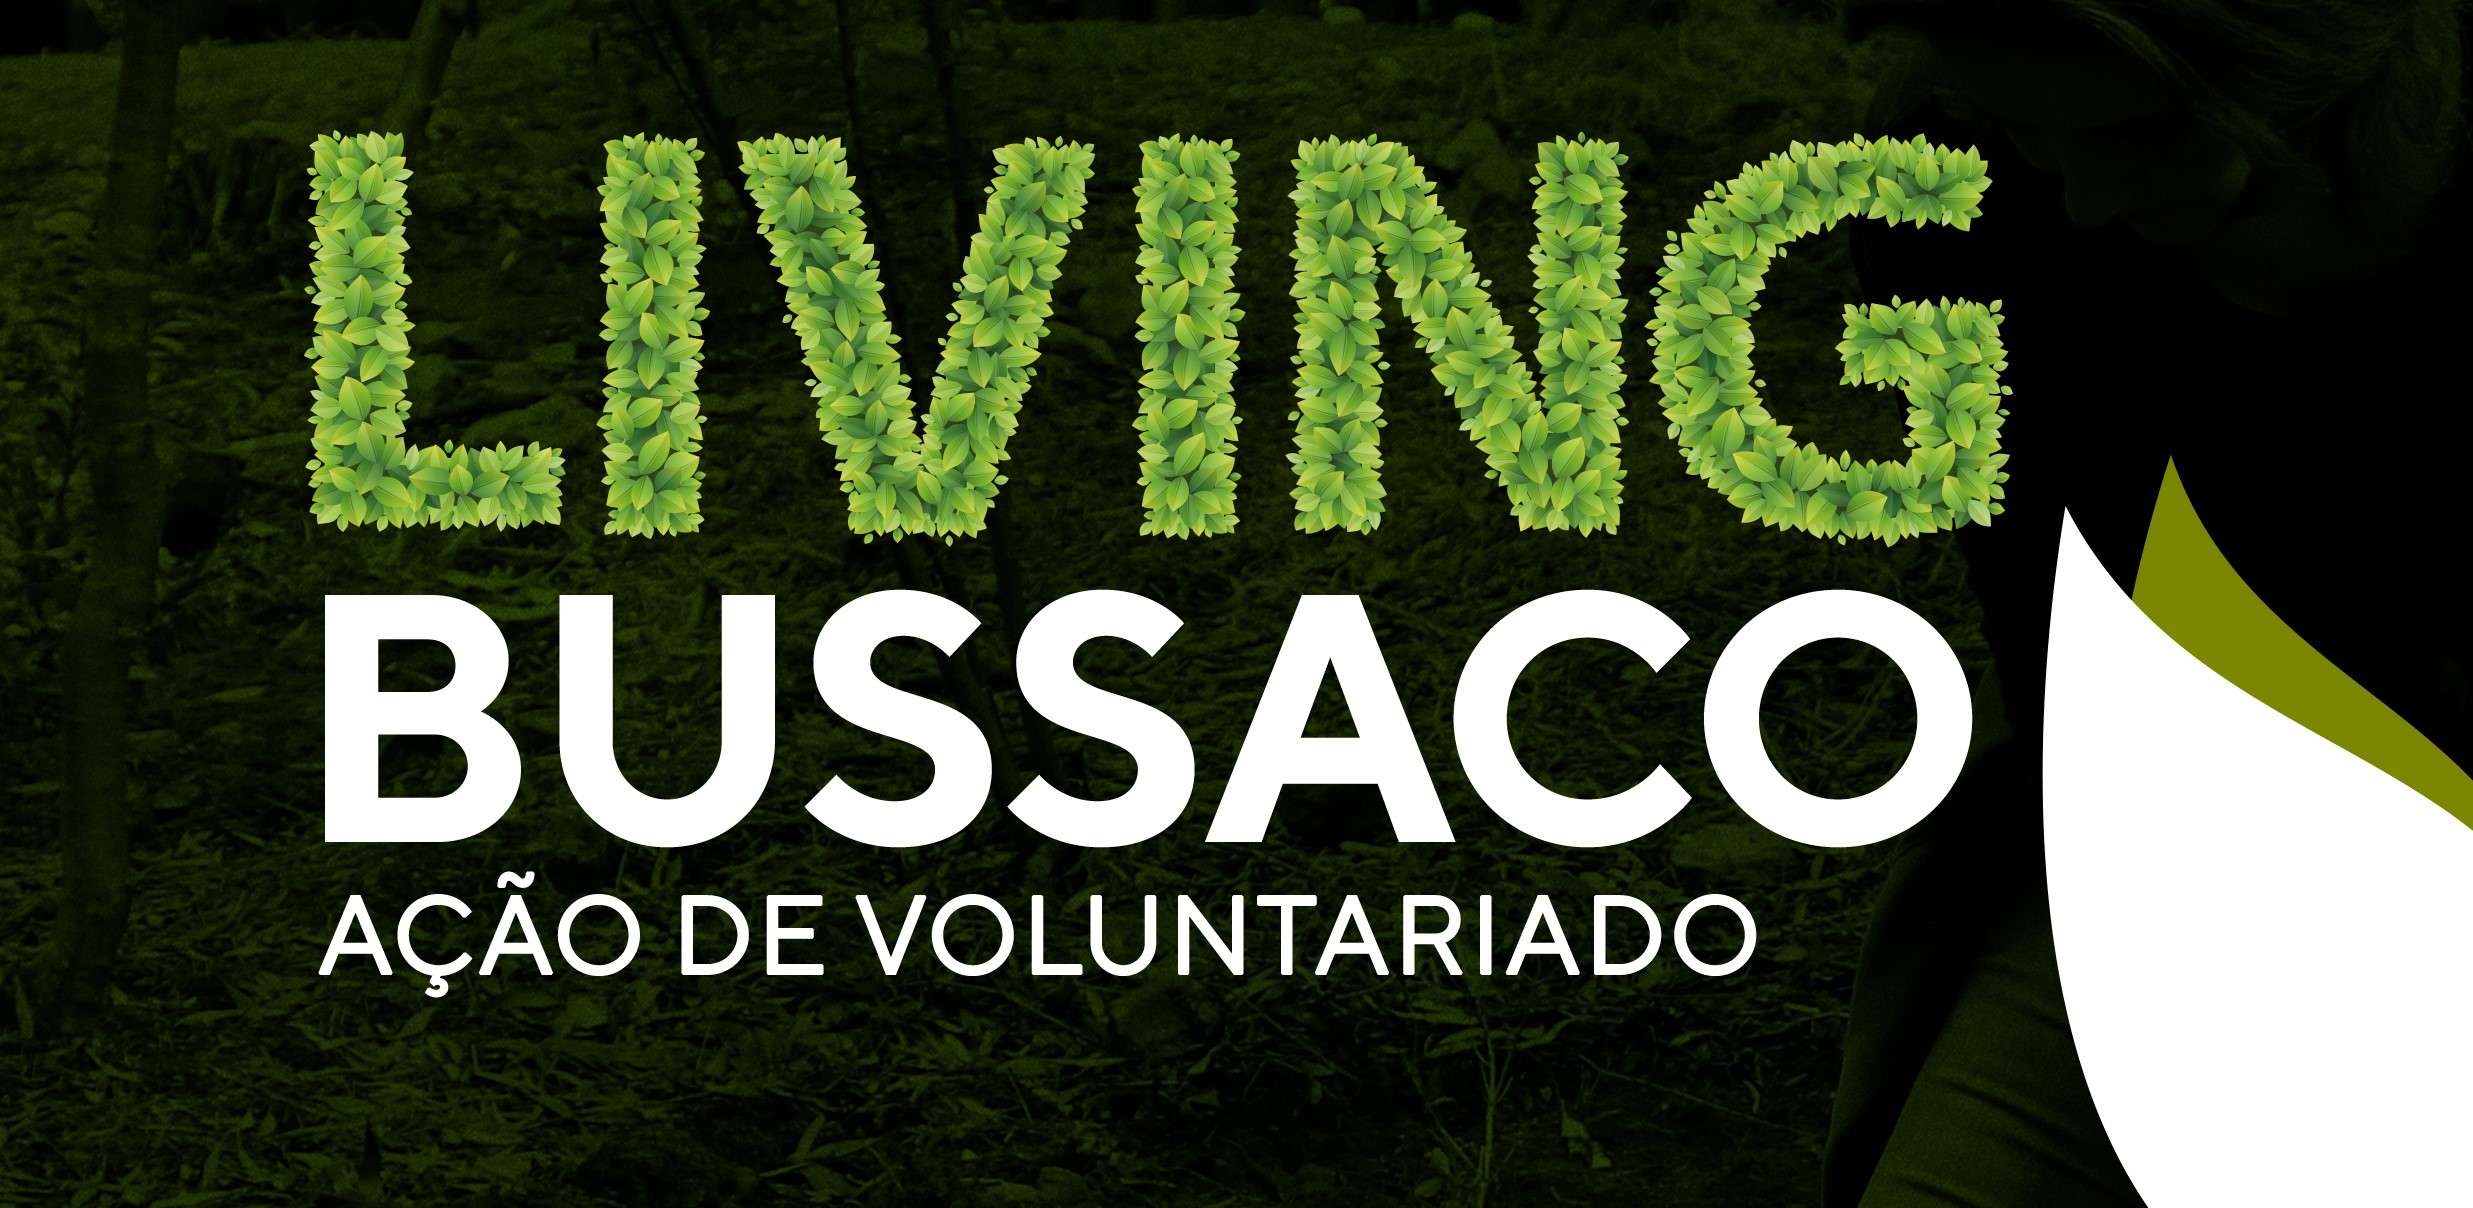 4º Living Bussaco - Ação de Voluntariado